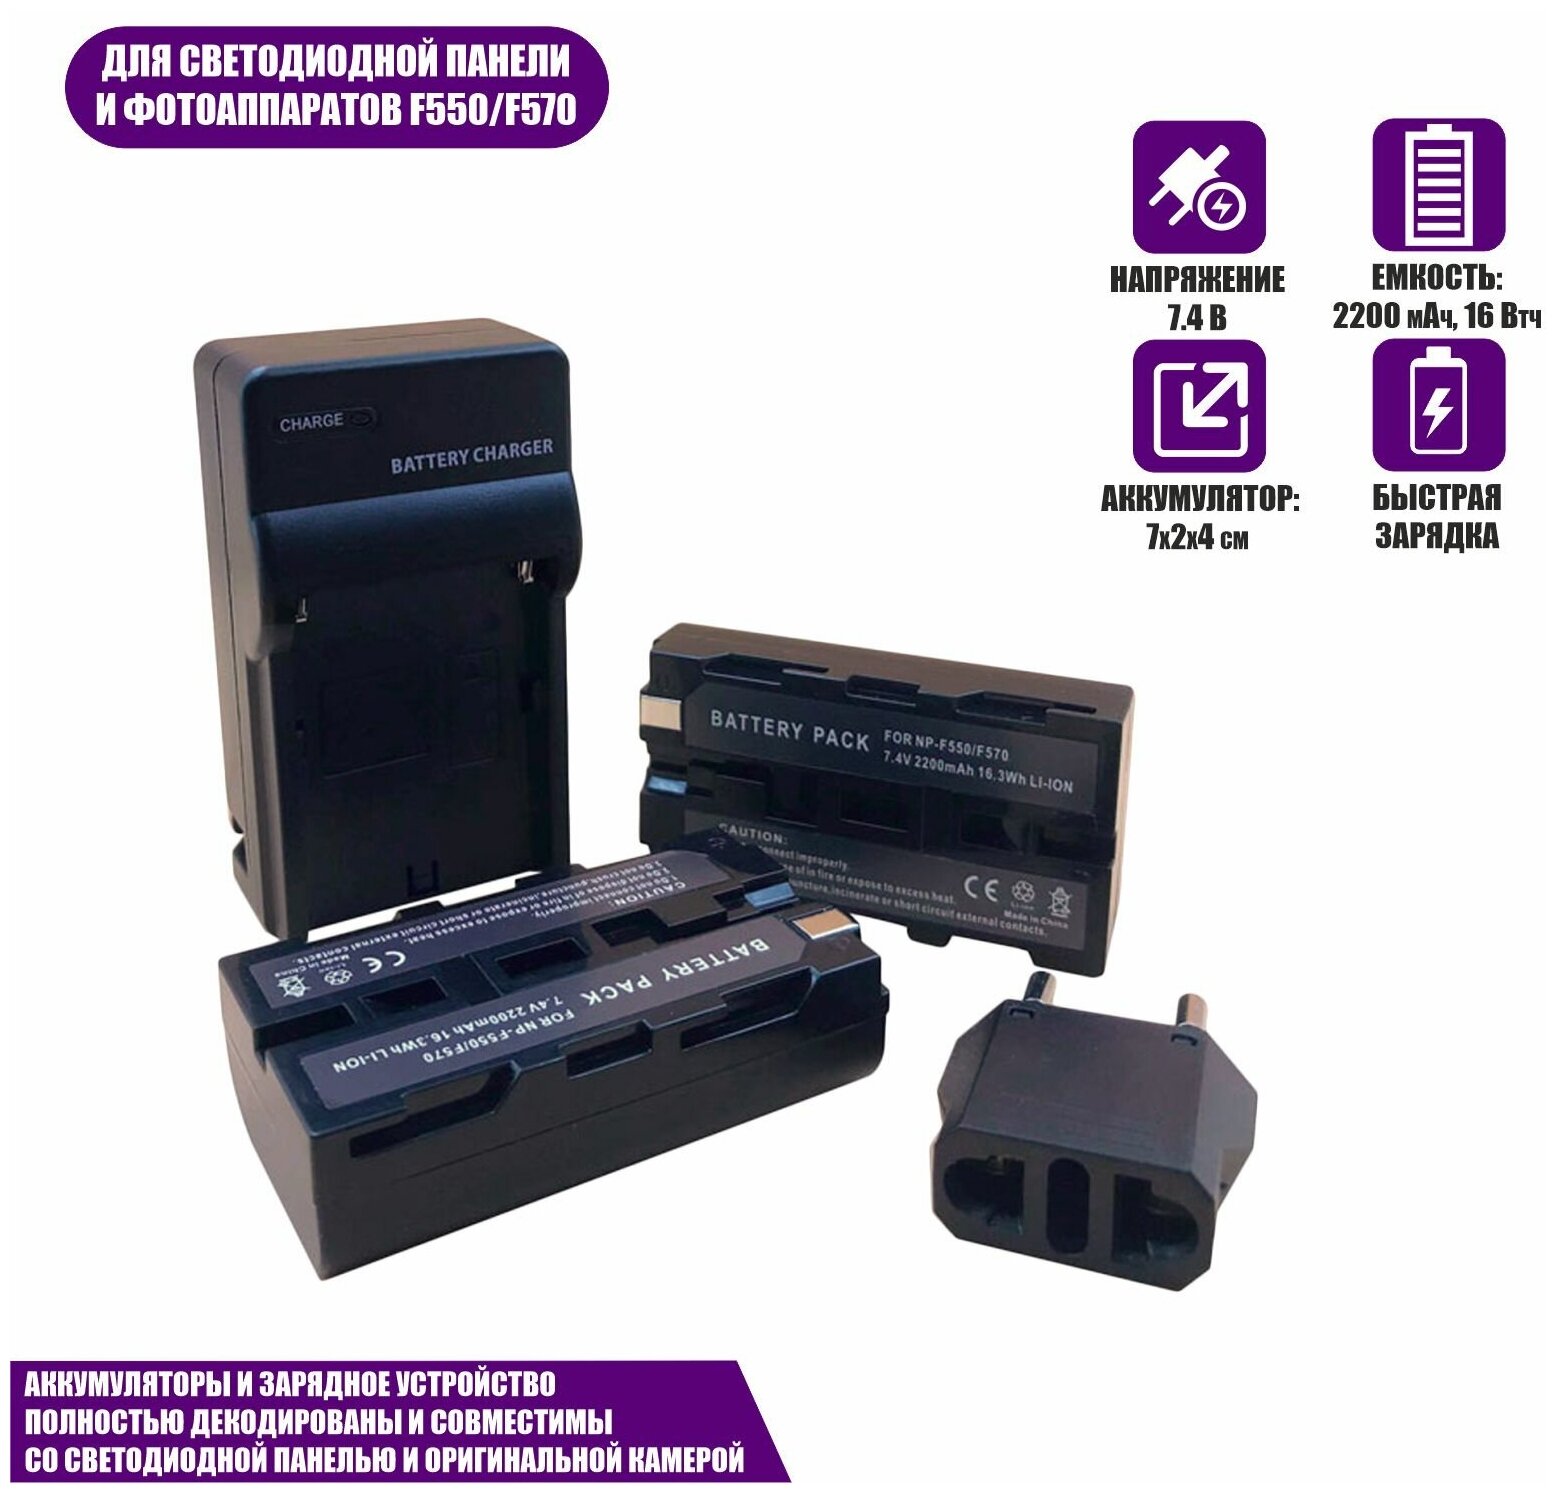 Аккумуляторы LI-ION серии NP-F550/F570 для видеокамеры Sony и светодиодной панели 7.4 В 2200 мАч с зарядным устройством